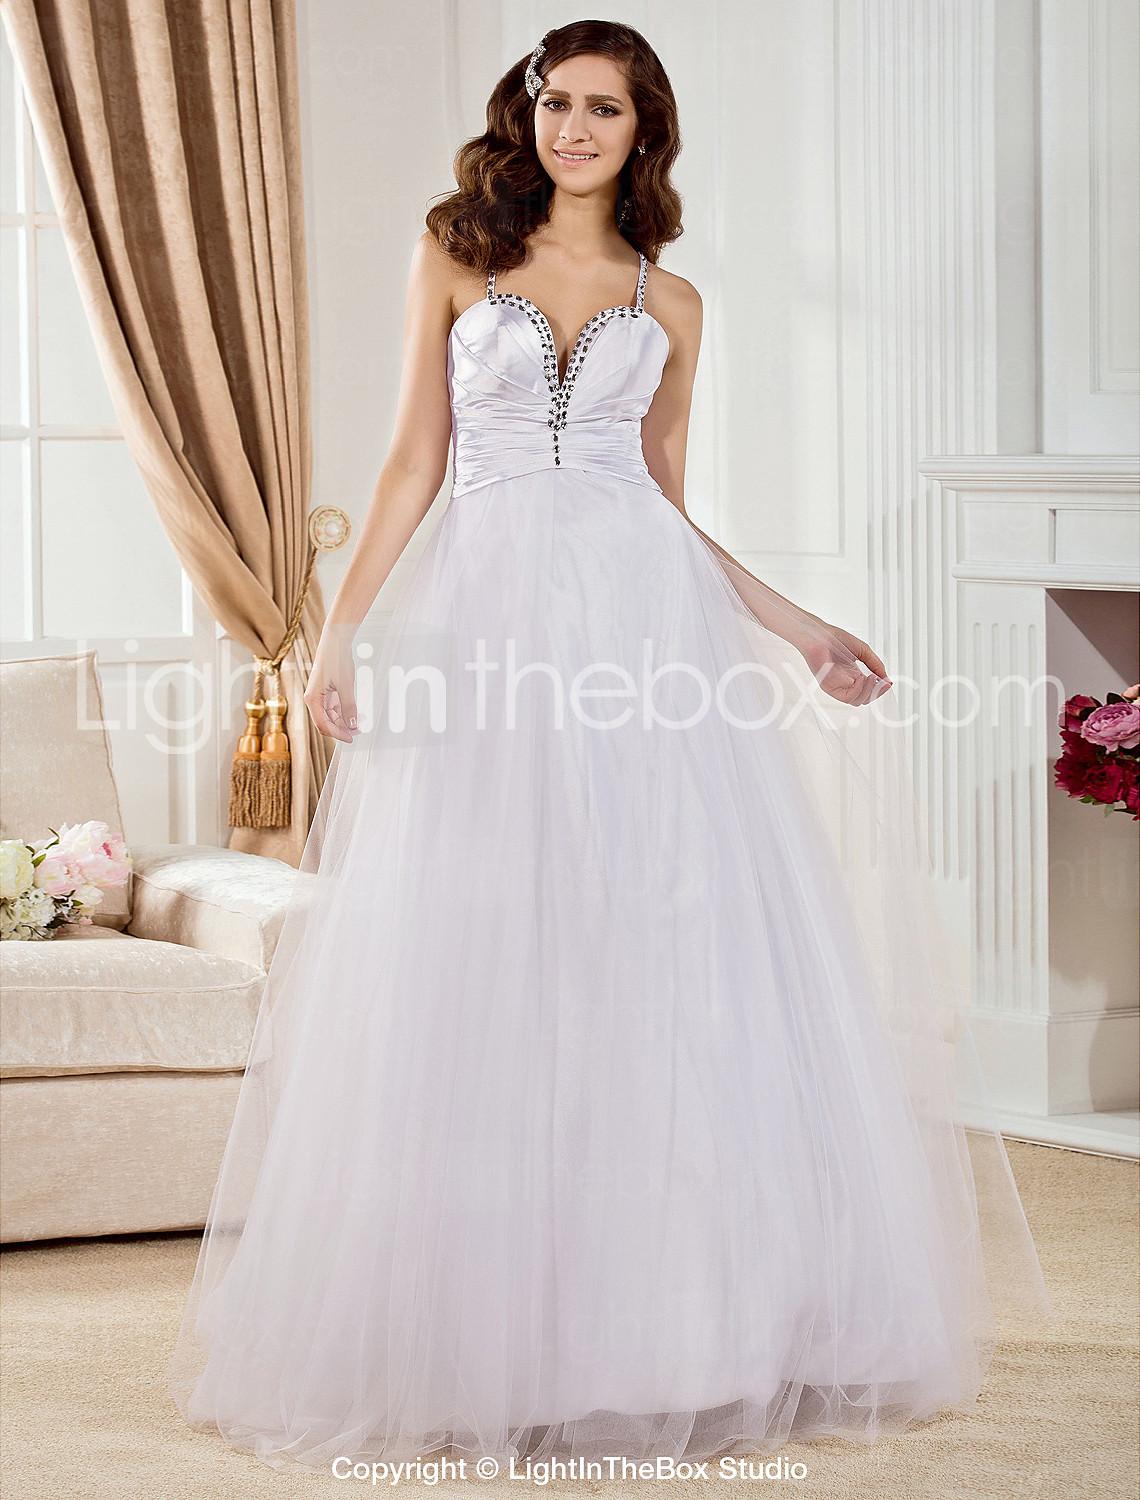 Foto una línea de cariño piso-longitud de tul y raso vestido de novia tejido elástico